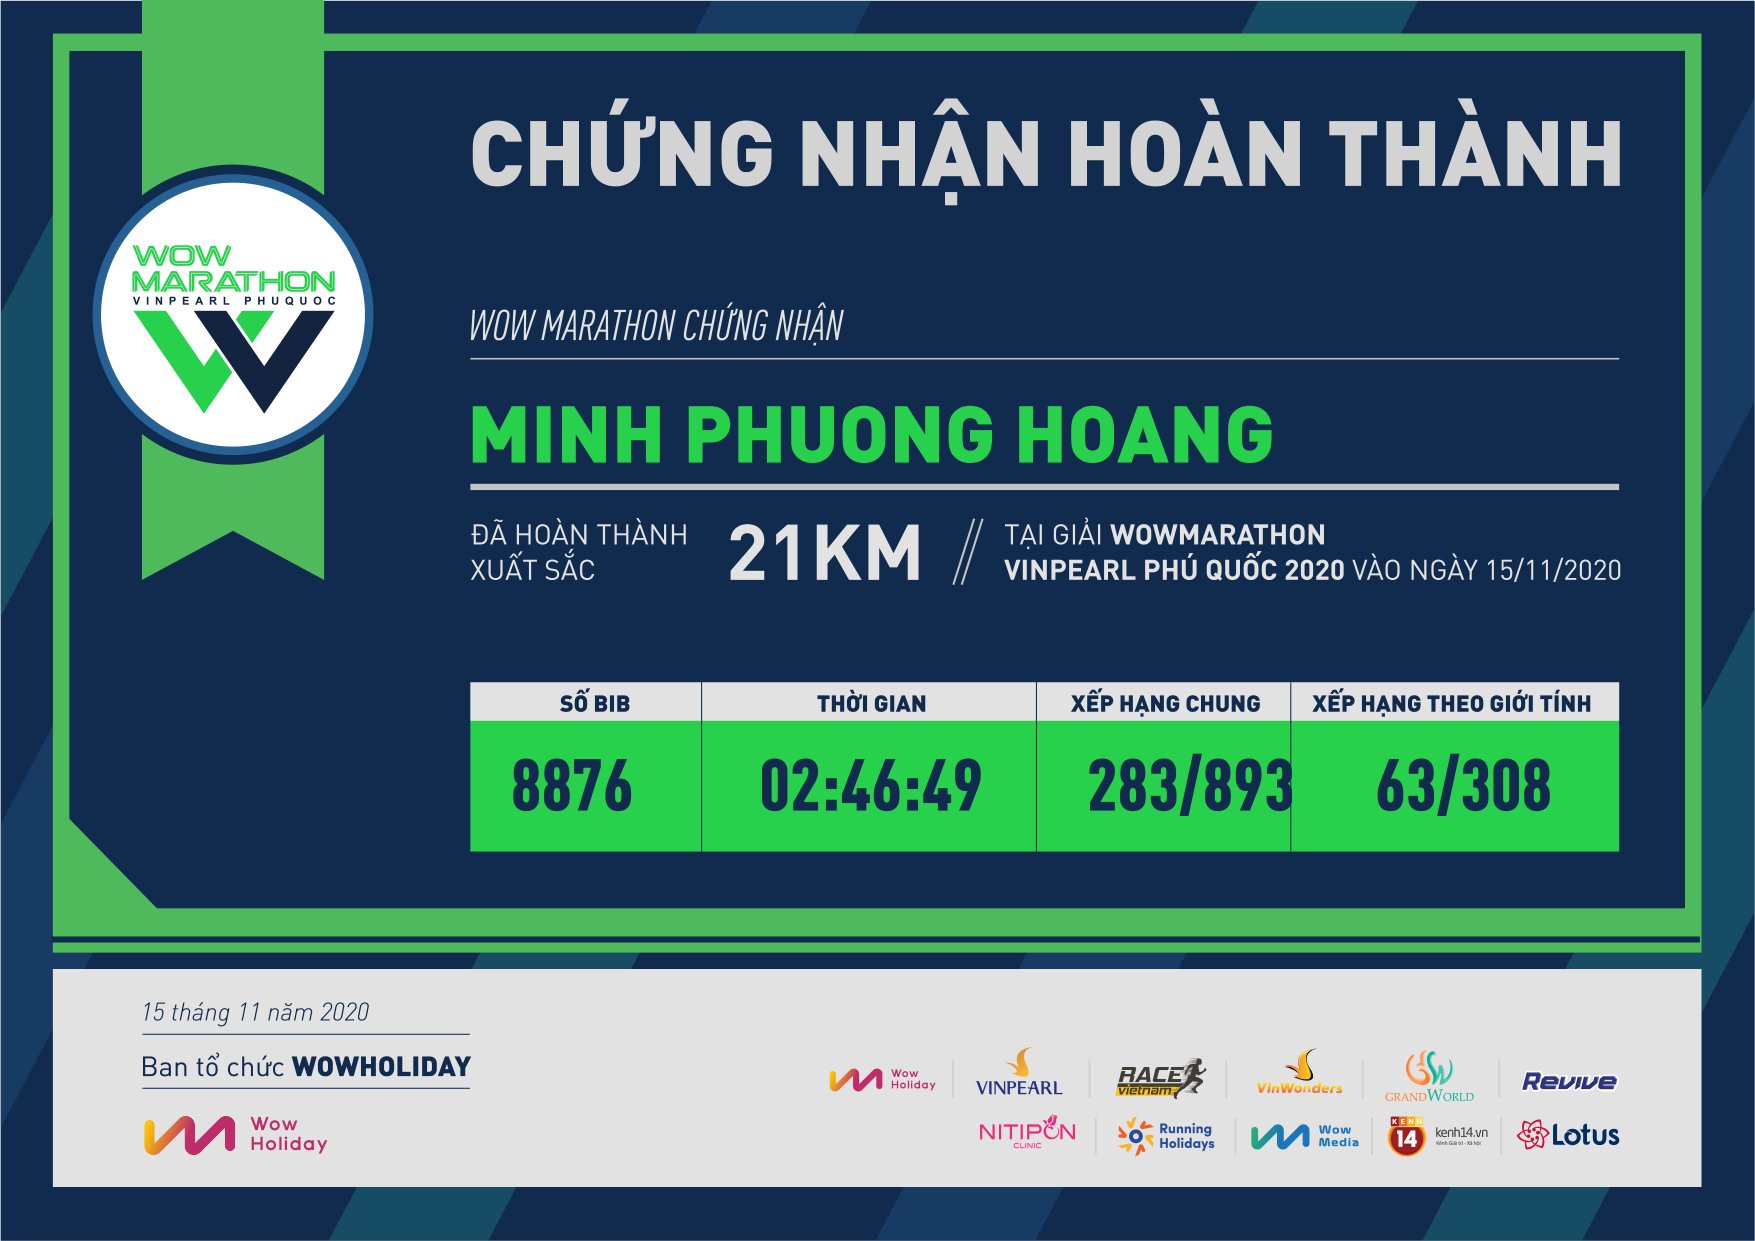 8876 - Minh Phuong Hoang